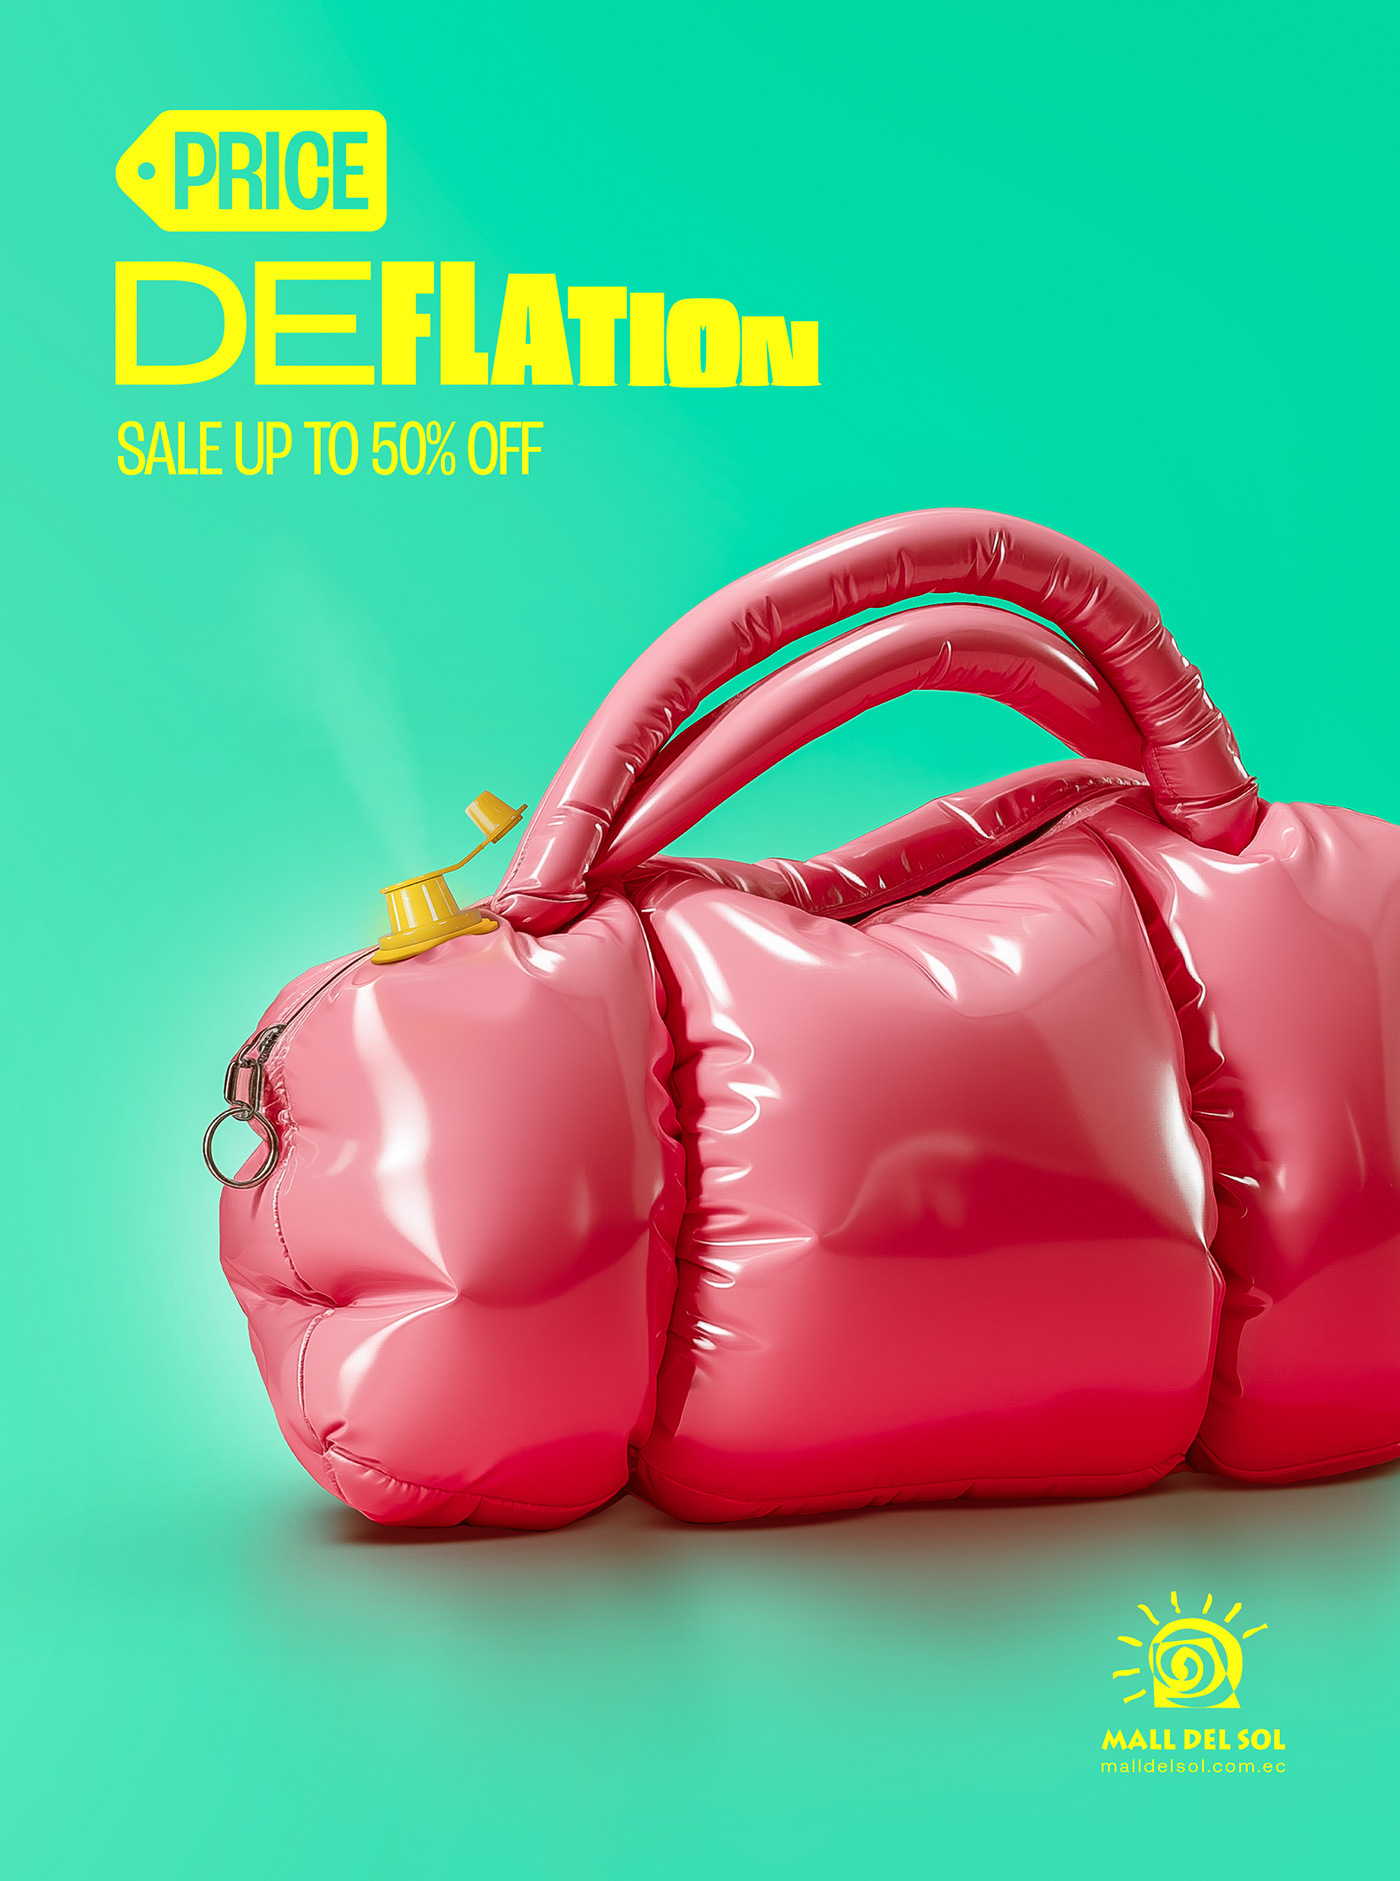 guitar bag purse playstation ps5 mall Ecuador guayaquil deflated Mall del Sol